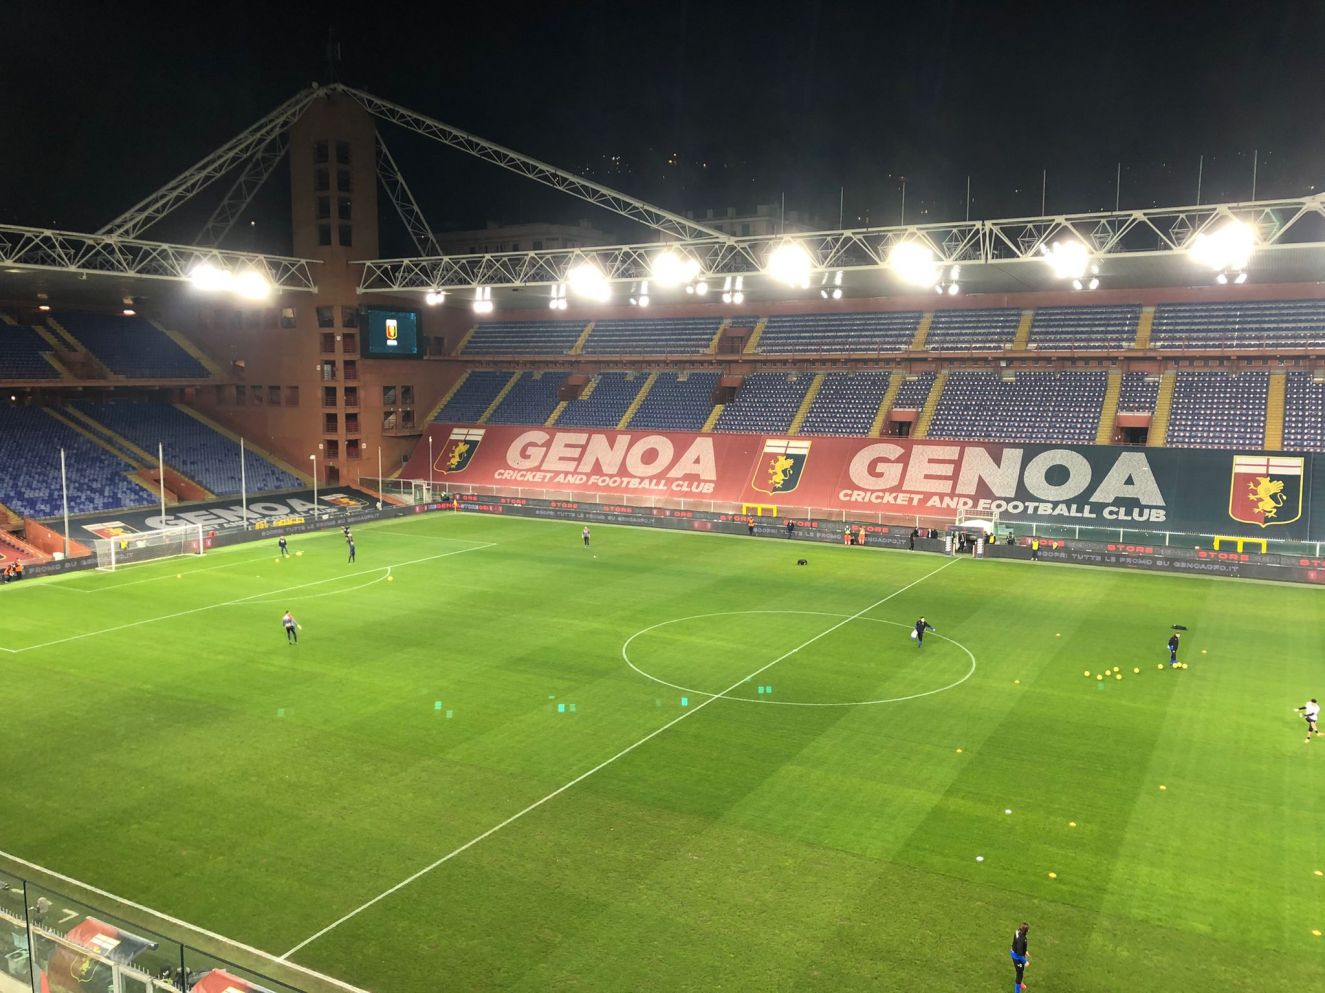 Genoa 1-1 Sampdoria, la cronaca live del match